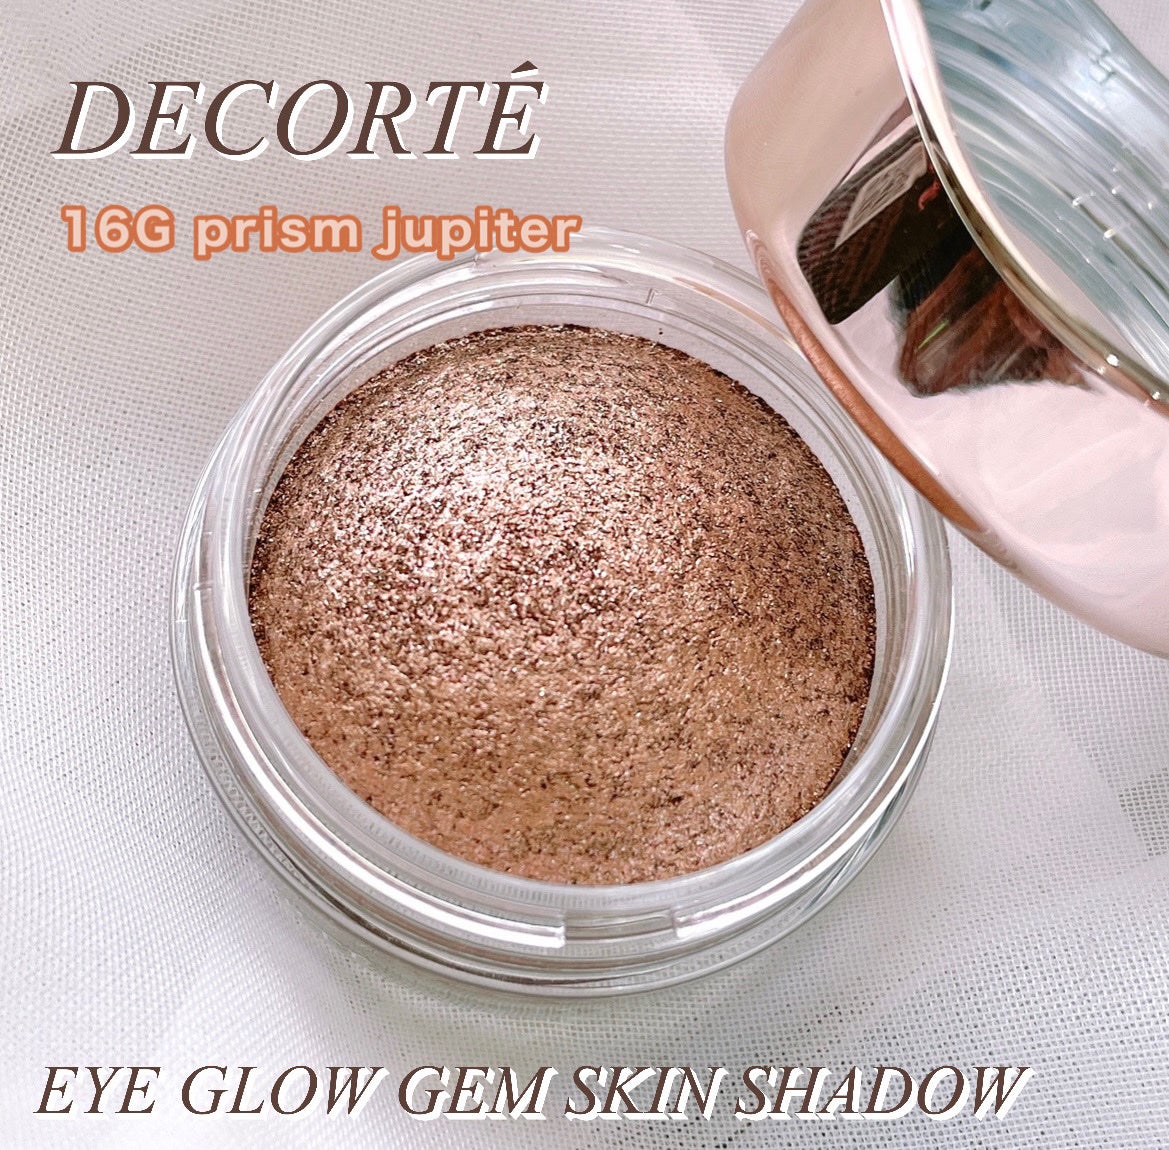 Decorte Eye Glow Gem Skin Shadow - Dewy Glow